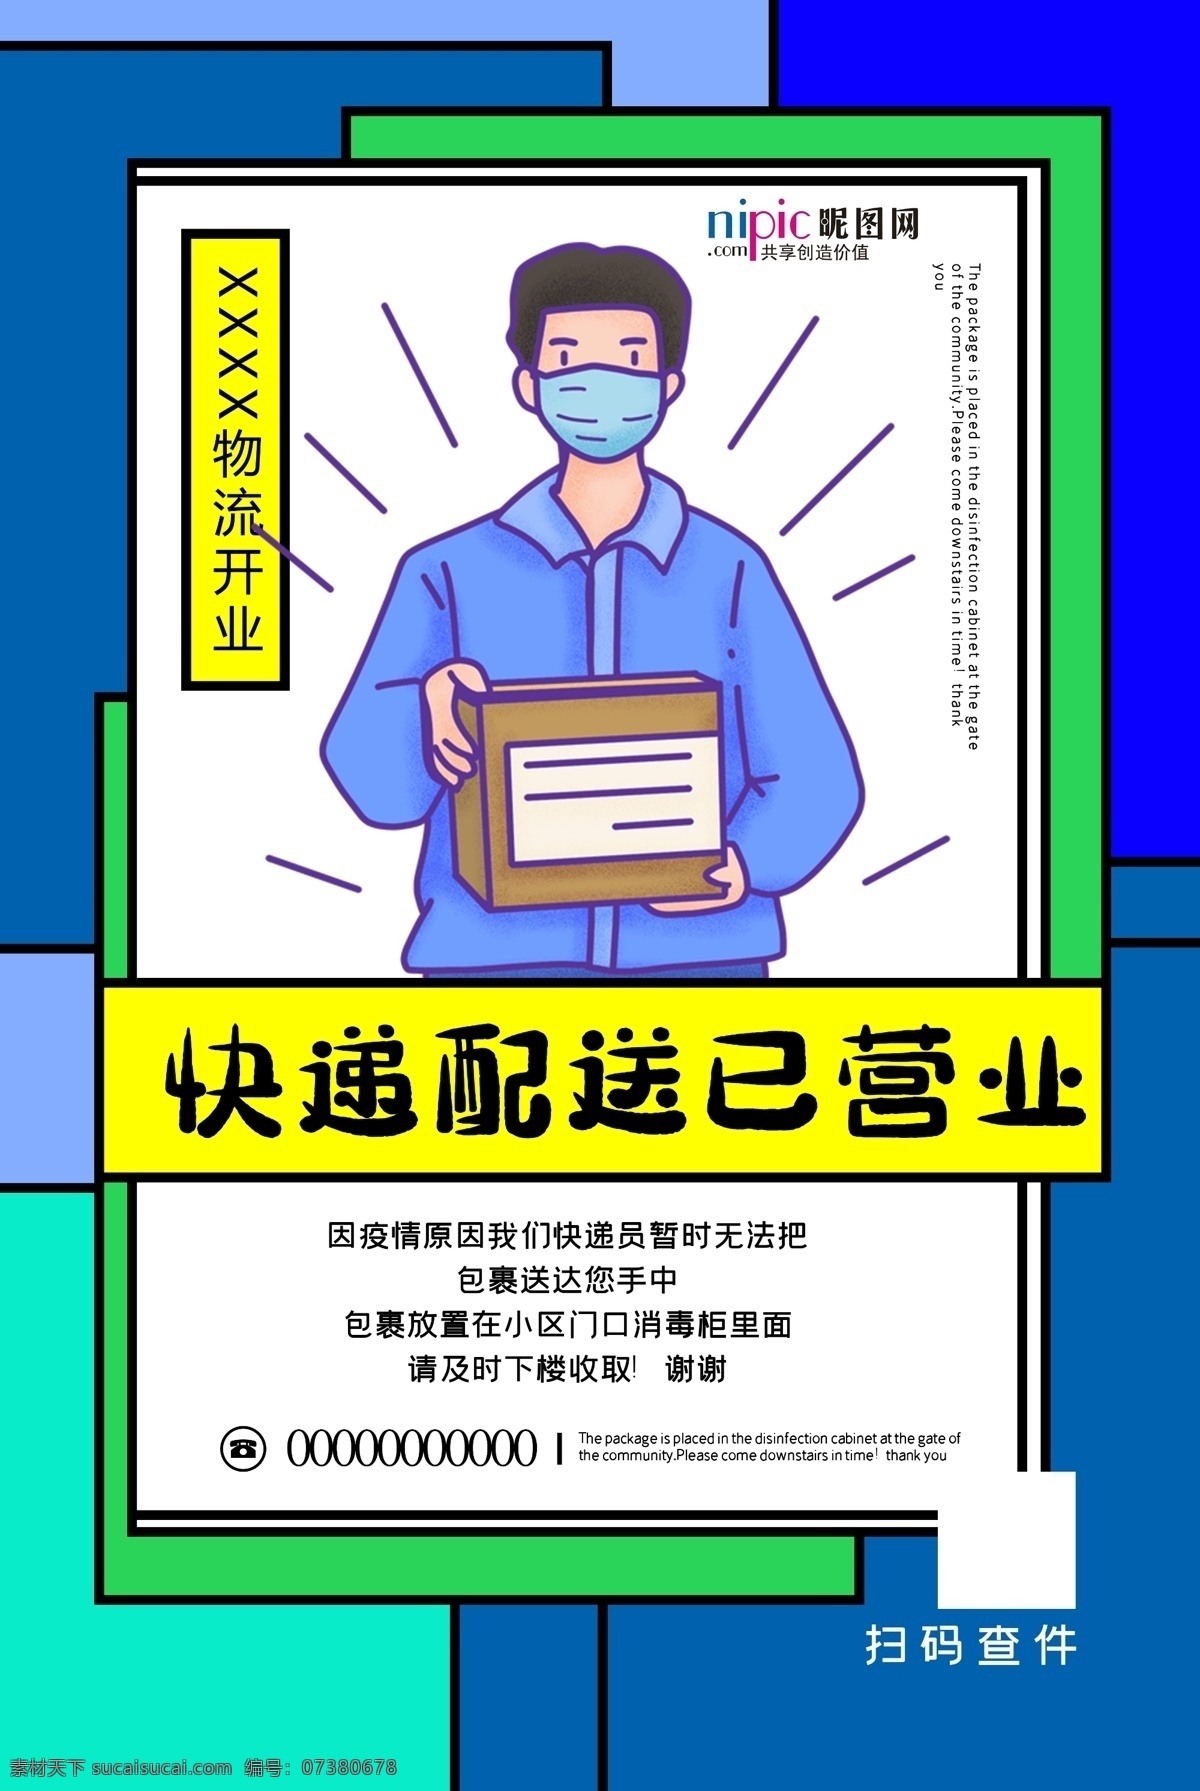 预防 武汉 冠状 肺炎 流感 病毒 海报